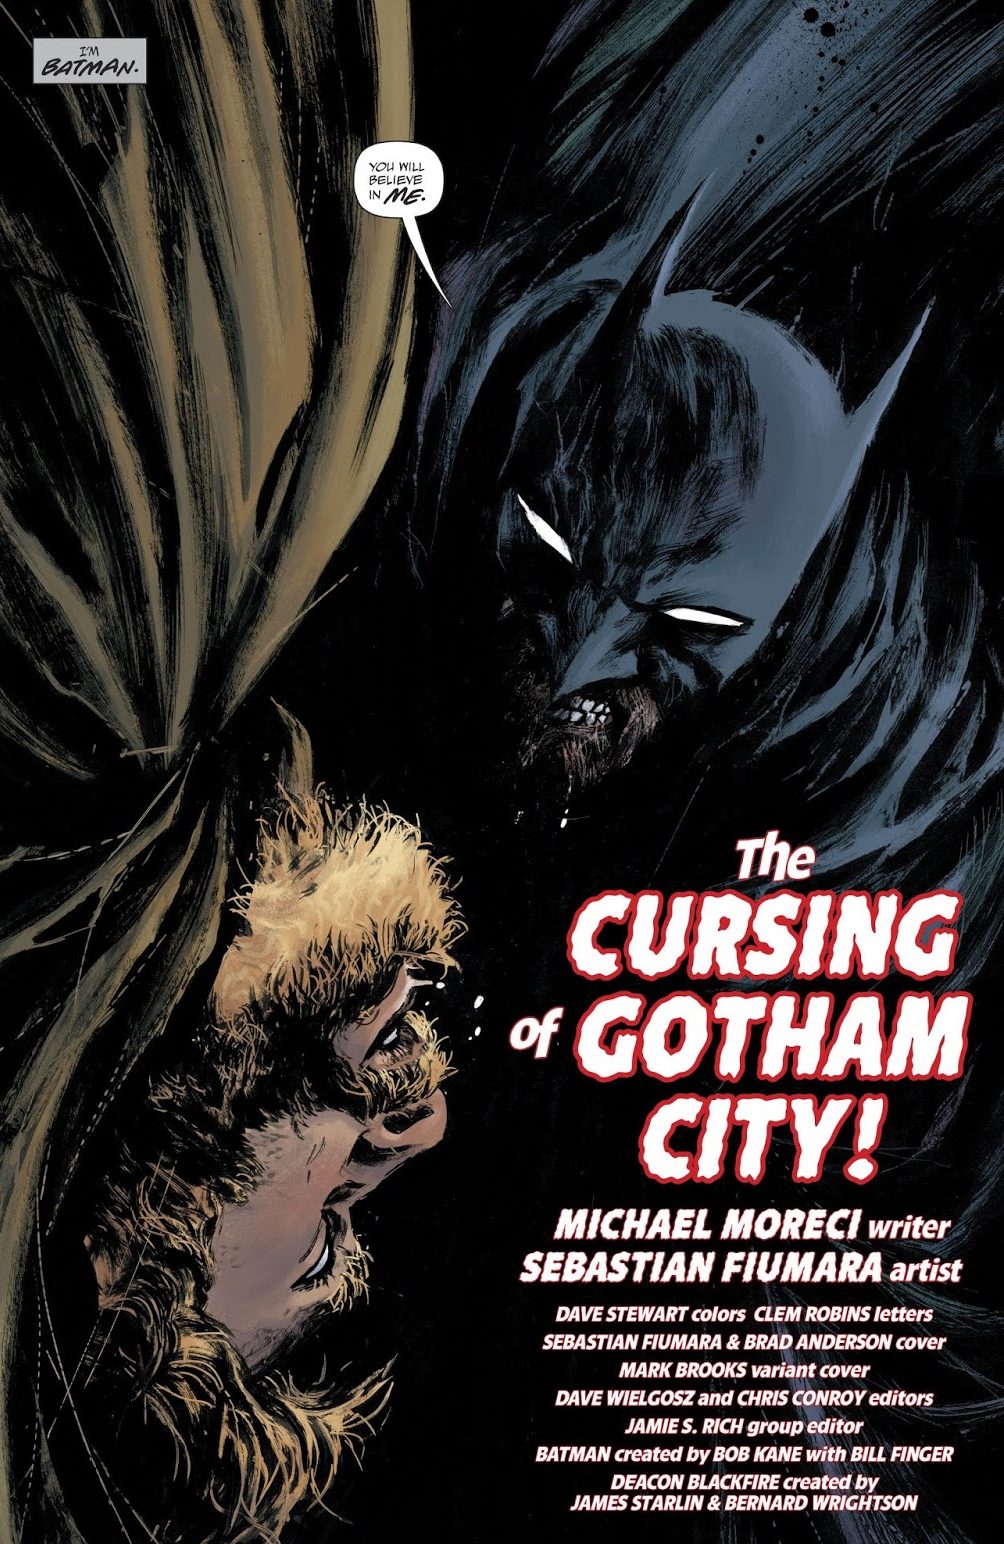 Batman (Detective Comics Vol. 1 #982)